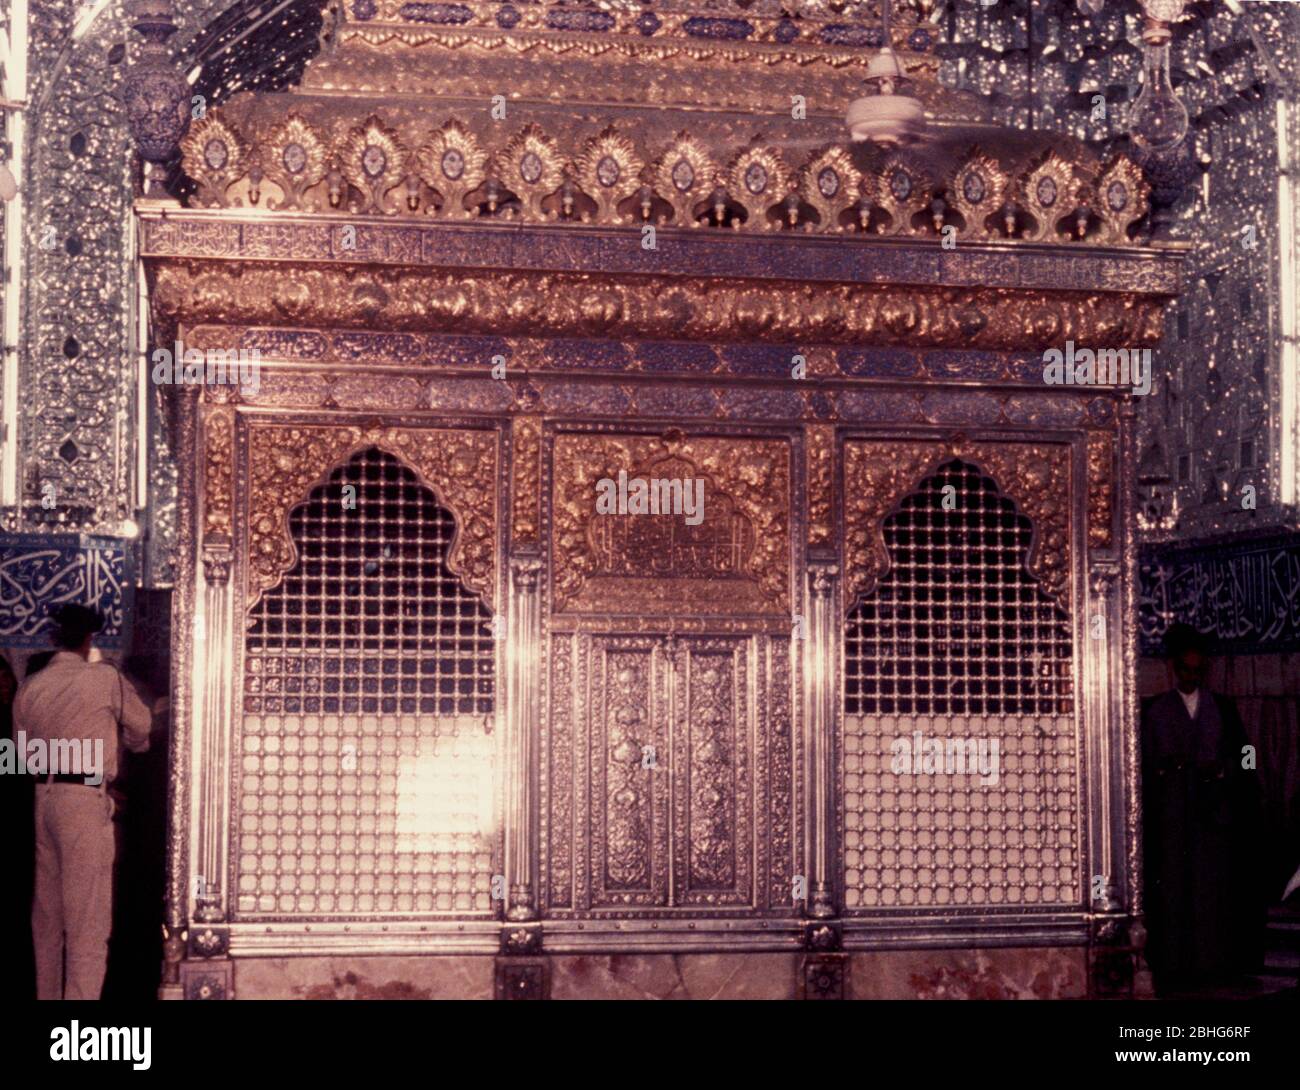 Le sanctuaire Imam Husayn ou la place de l'Imam Husayn ibn Ali est la mosquée et le lieu de sépulture de Husayn ibn Ali, le troisième Imam de l'Islam Shia, dans la ville de Karbala, en Irak. Martyre en 690 ce. Banque D'Images